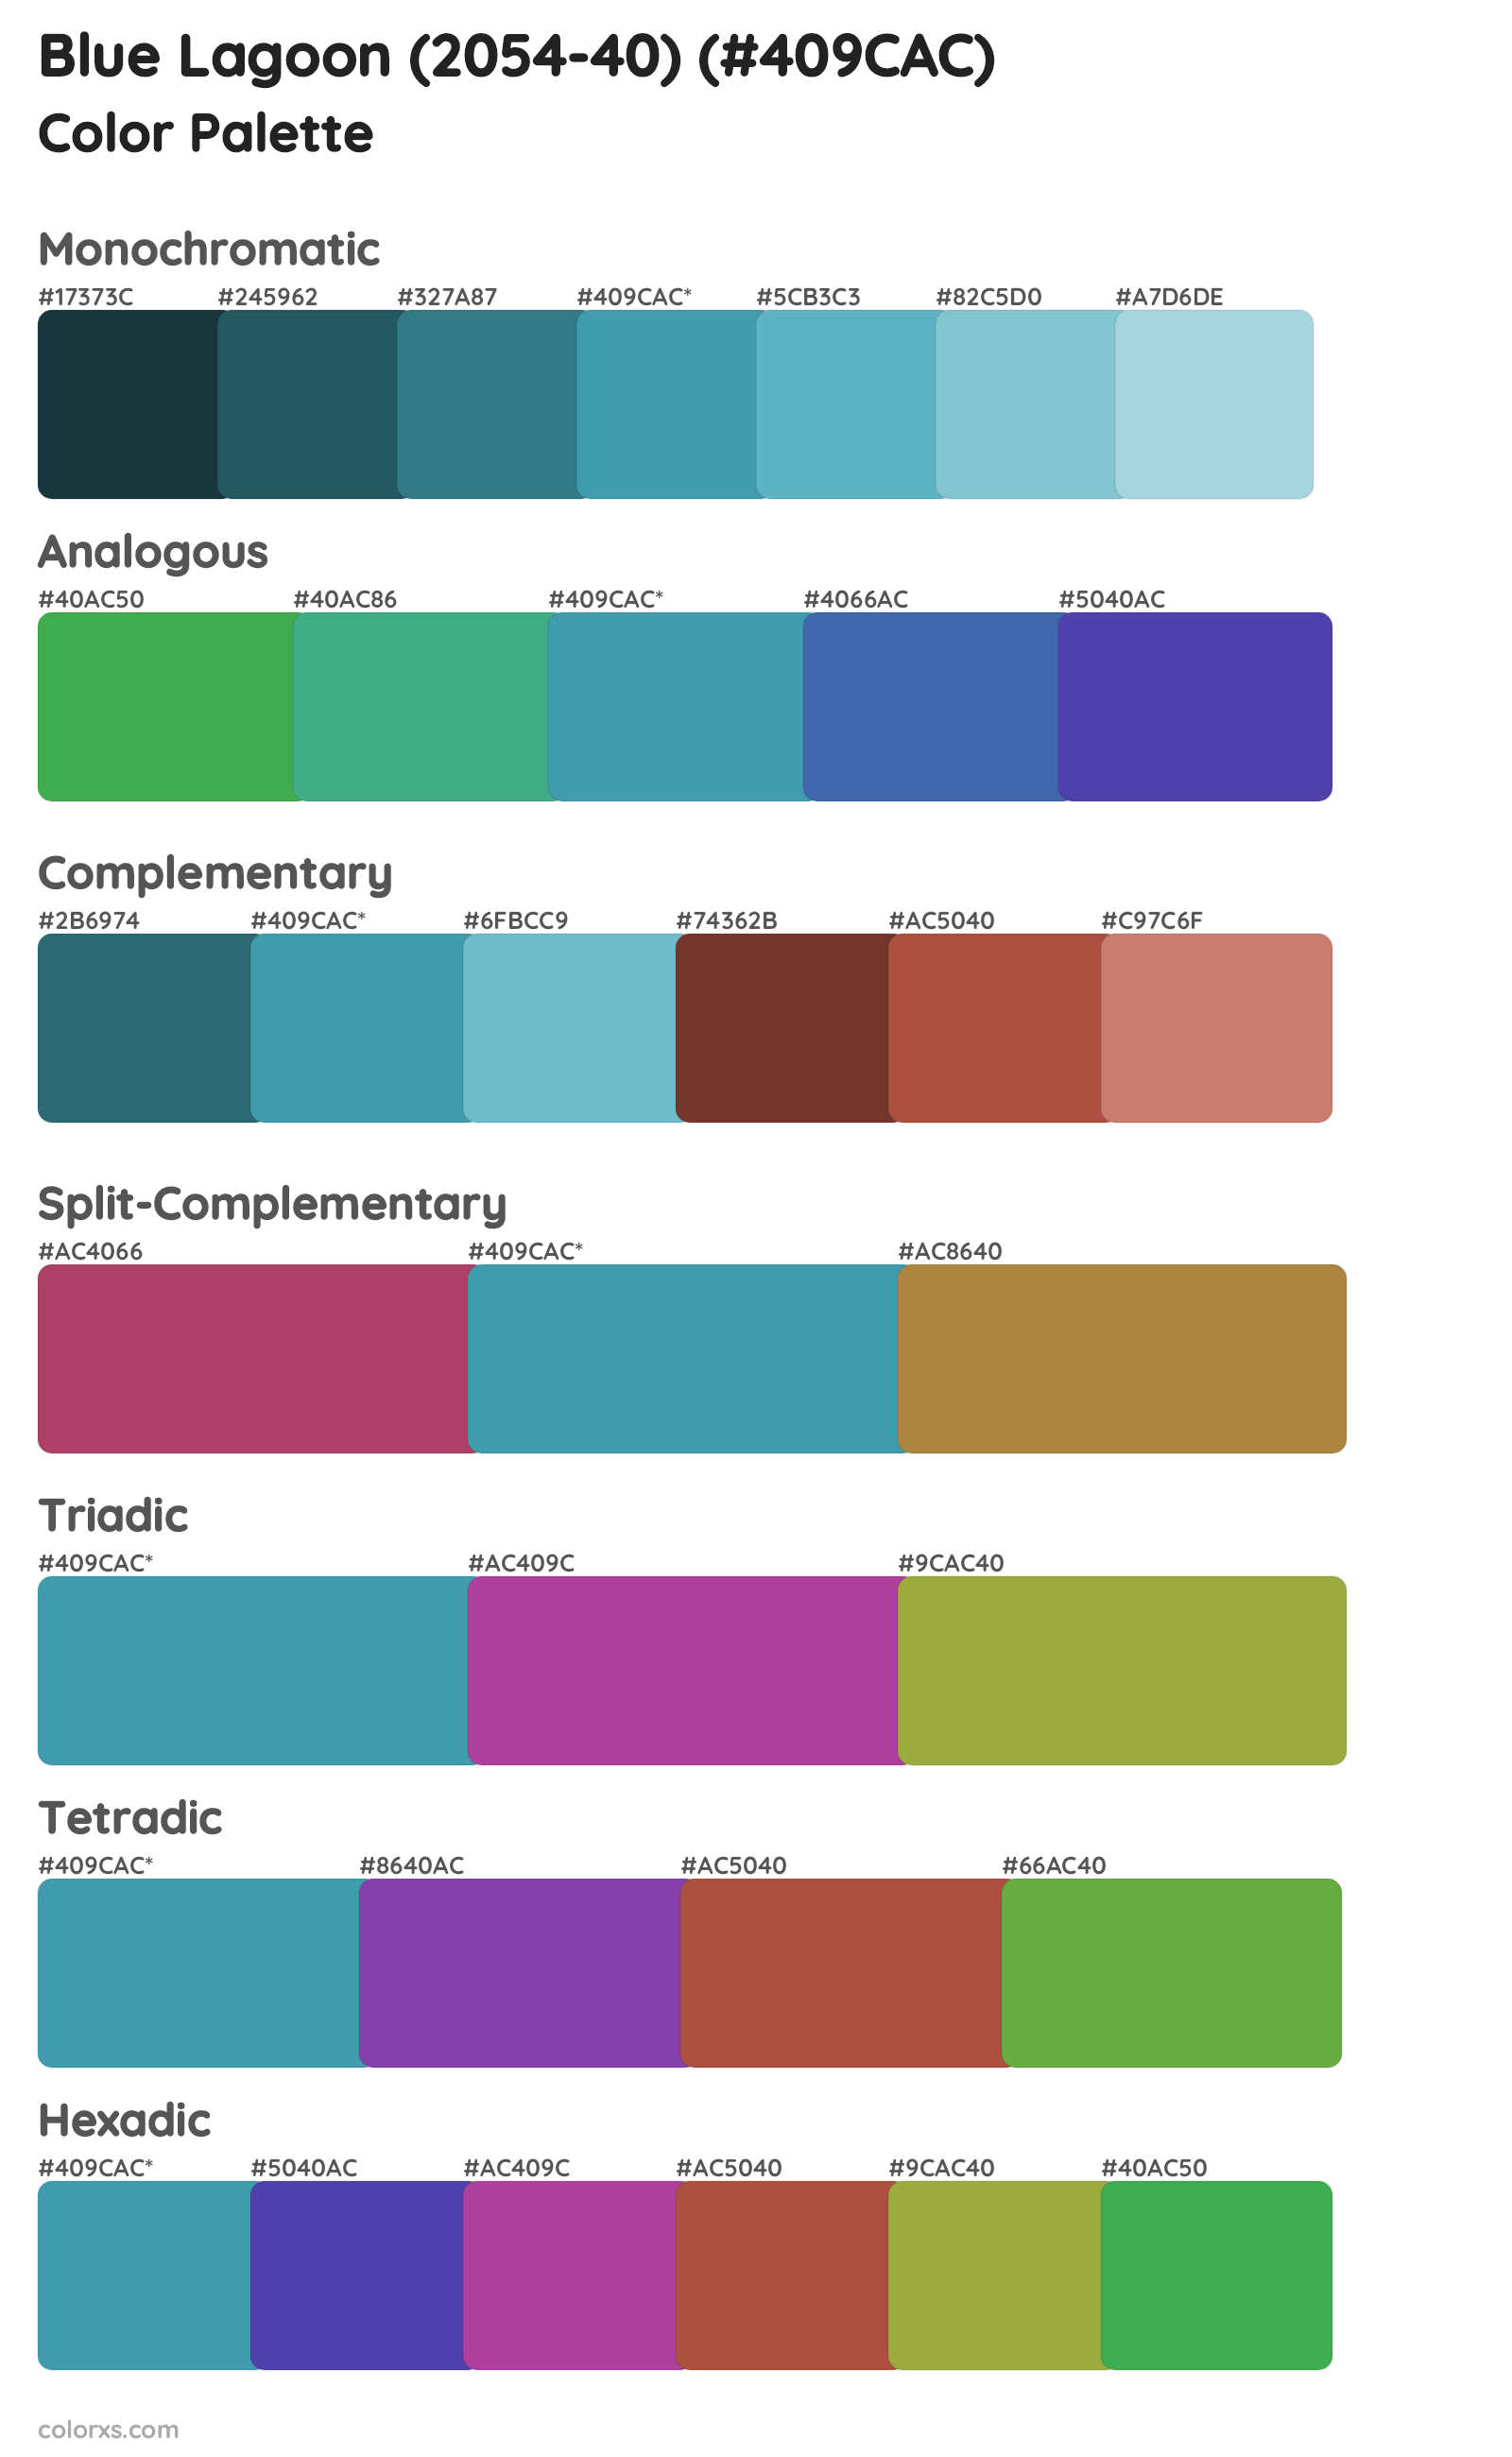 Blue Lagoon (2054-40) Color Scheme Palettes